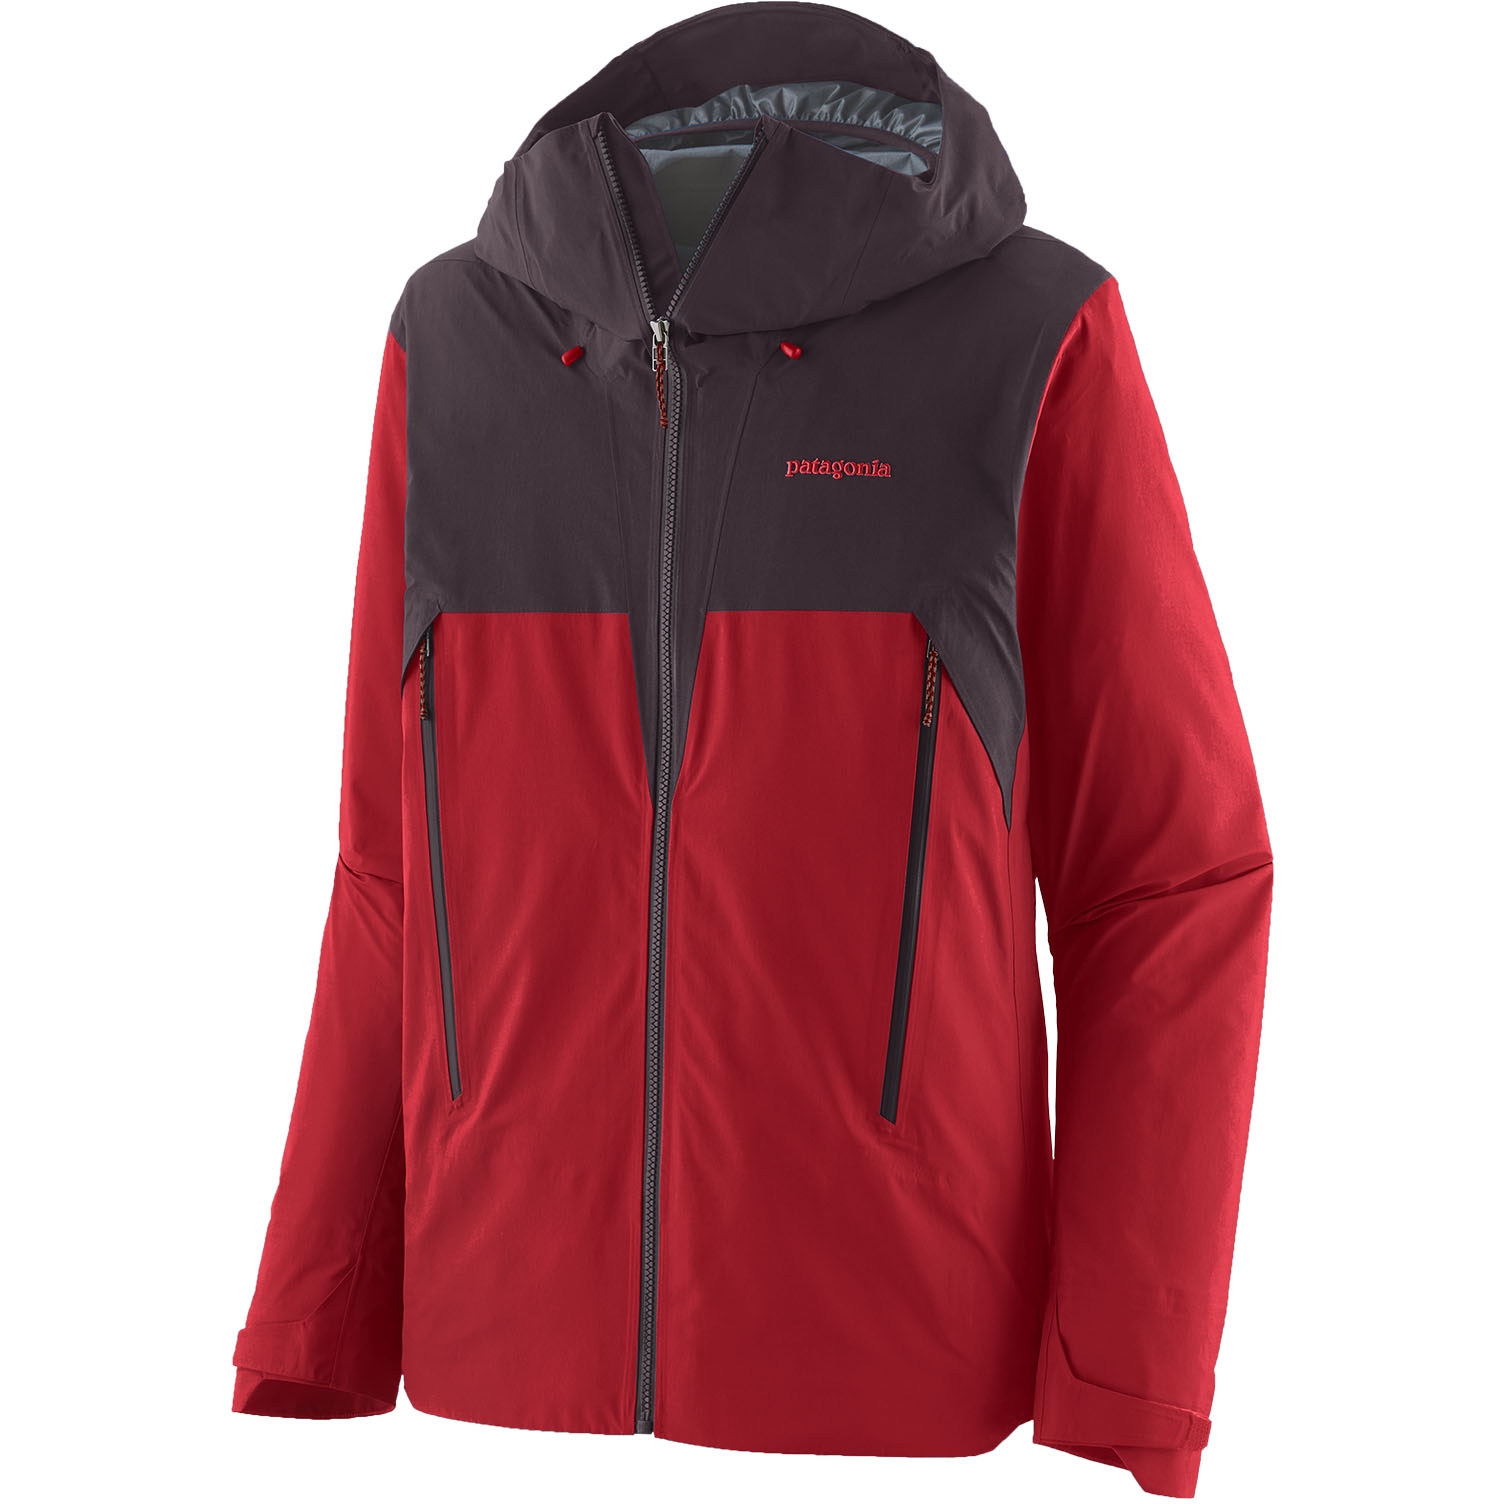 Produktbild von Patagonia Super Free Alpine Jacke - Touring Red